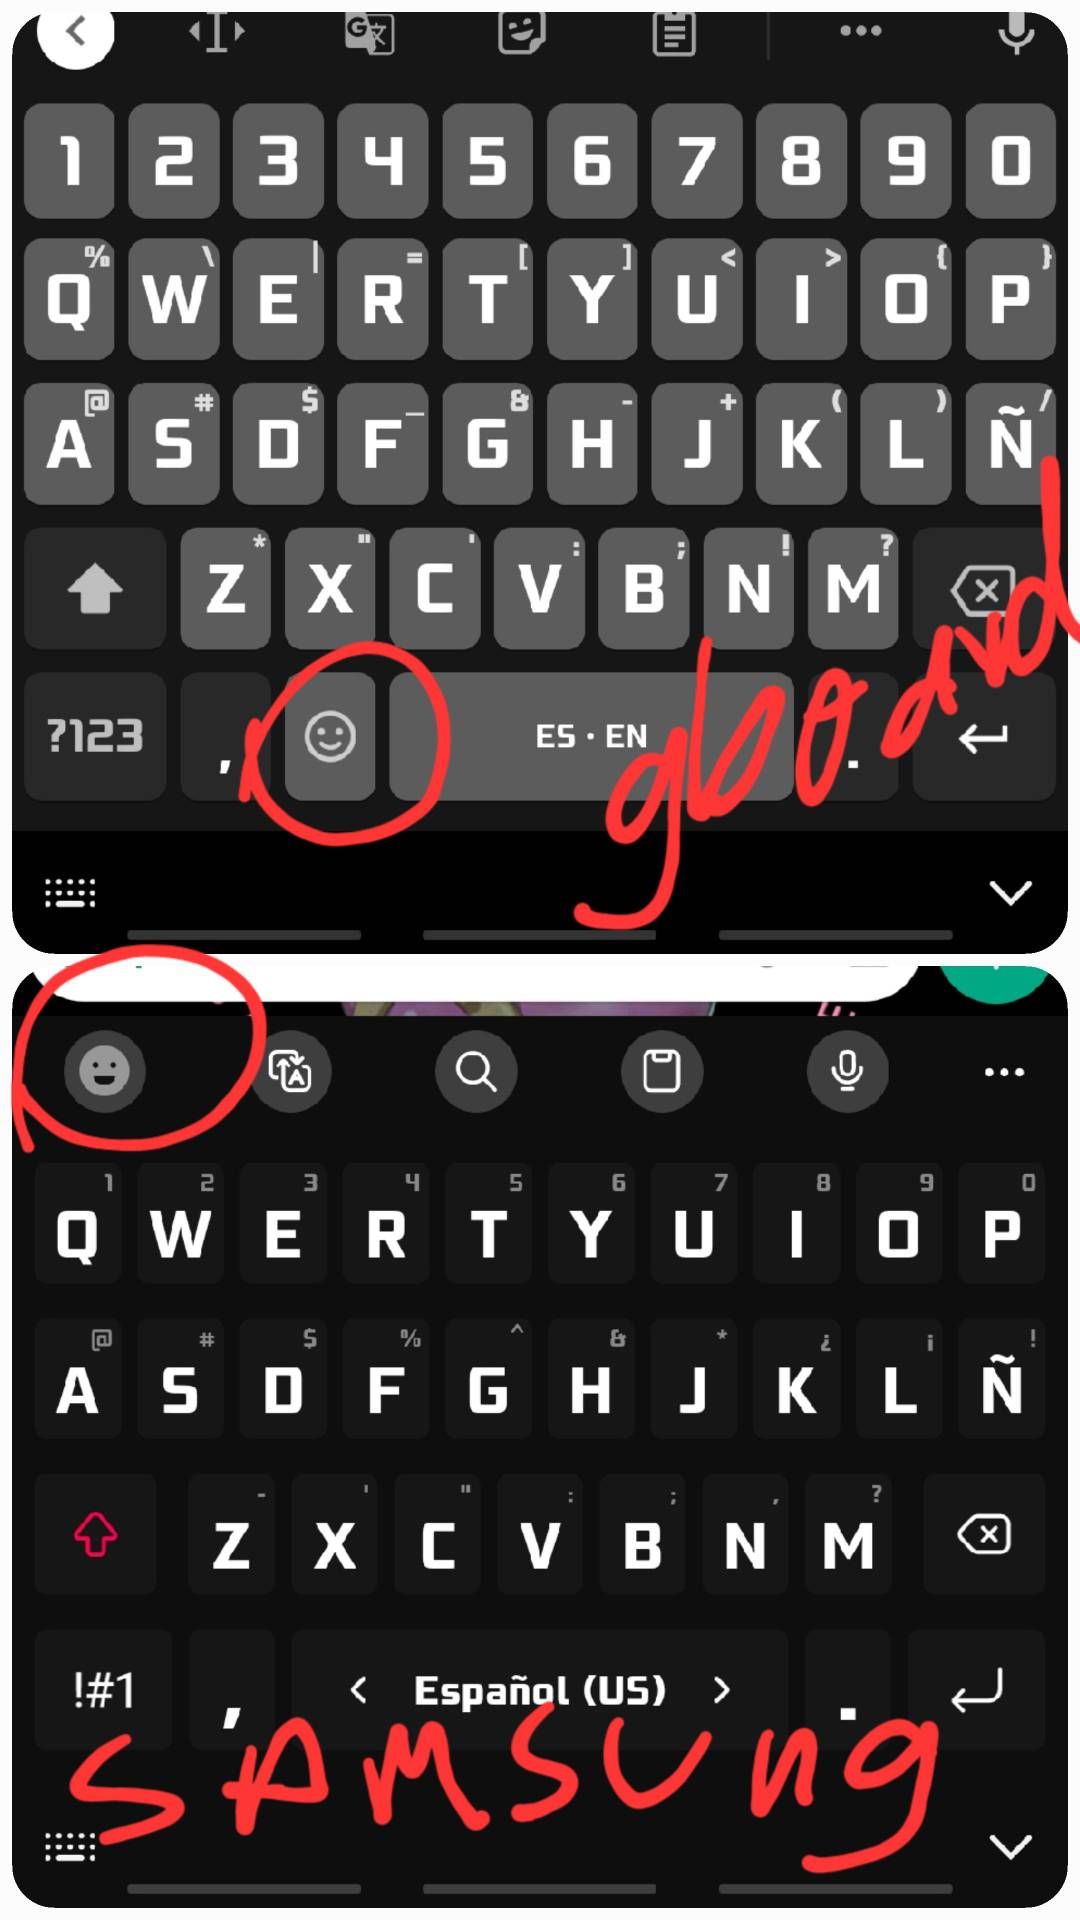 Como modifico el teclado Samsung para tener emojis... - Samsung Members